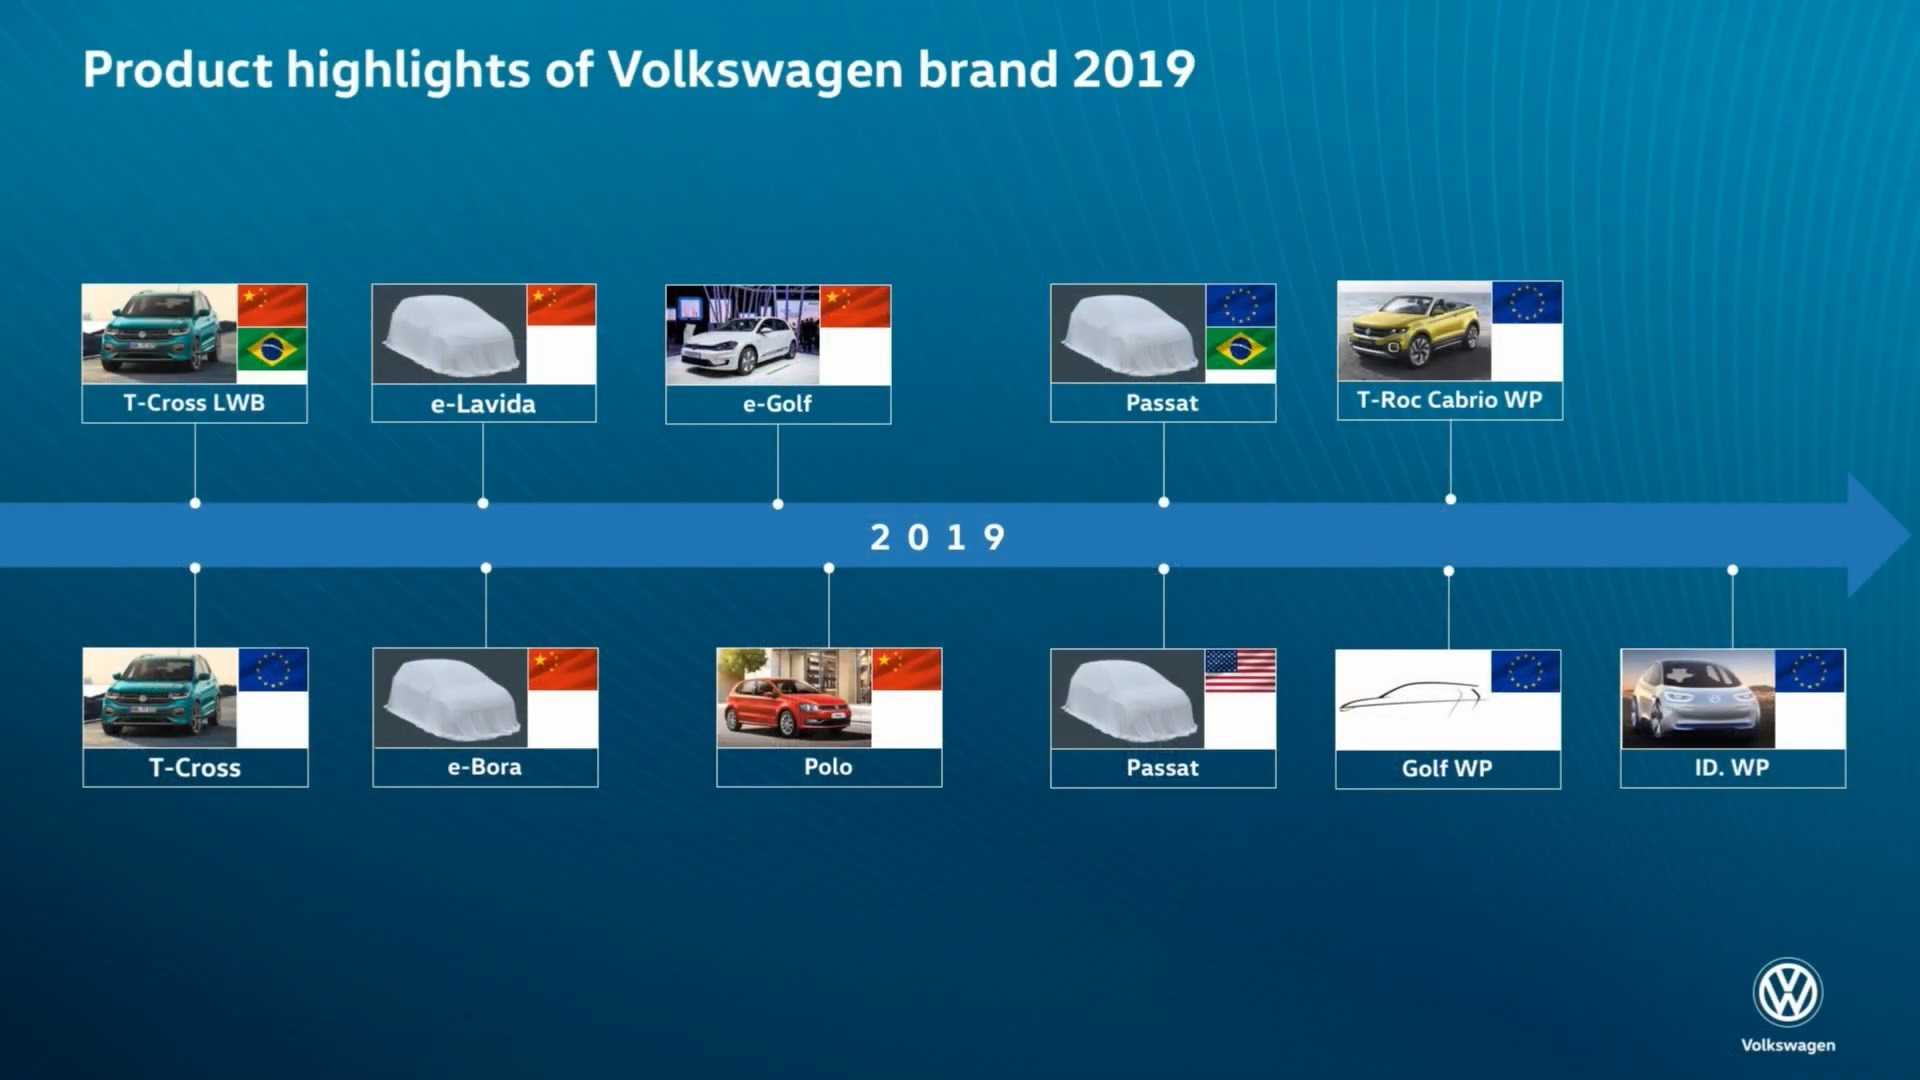 Berita, Rencana peluncuran Volkswagen Golf Mk8: VW Rilis Teaser Golf Mk8, Rilis di Q3 Tahun 2019